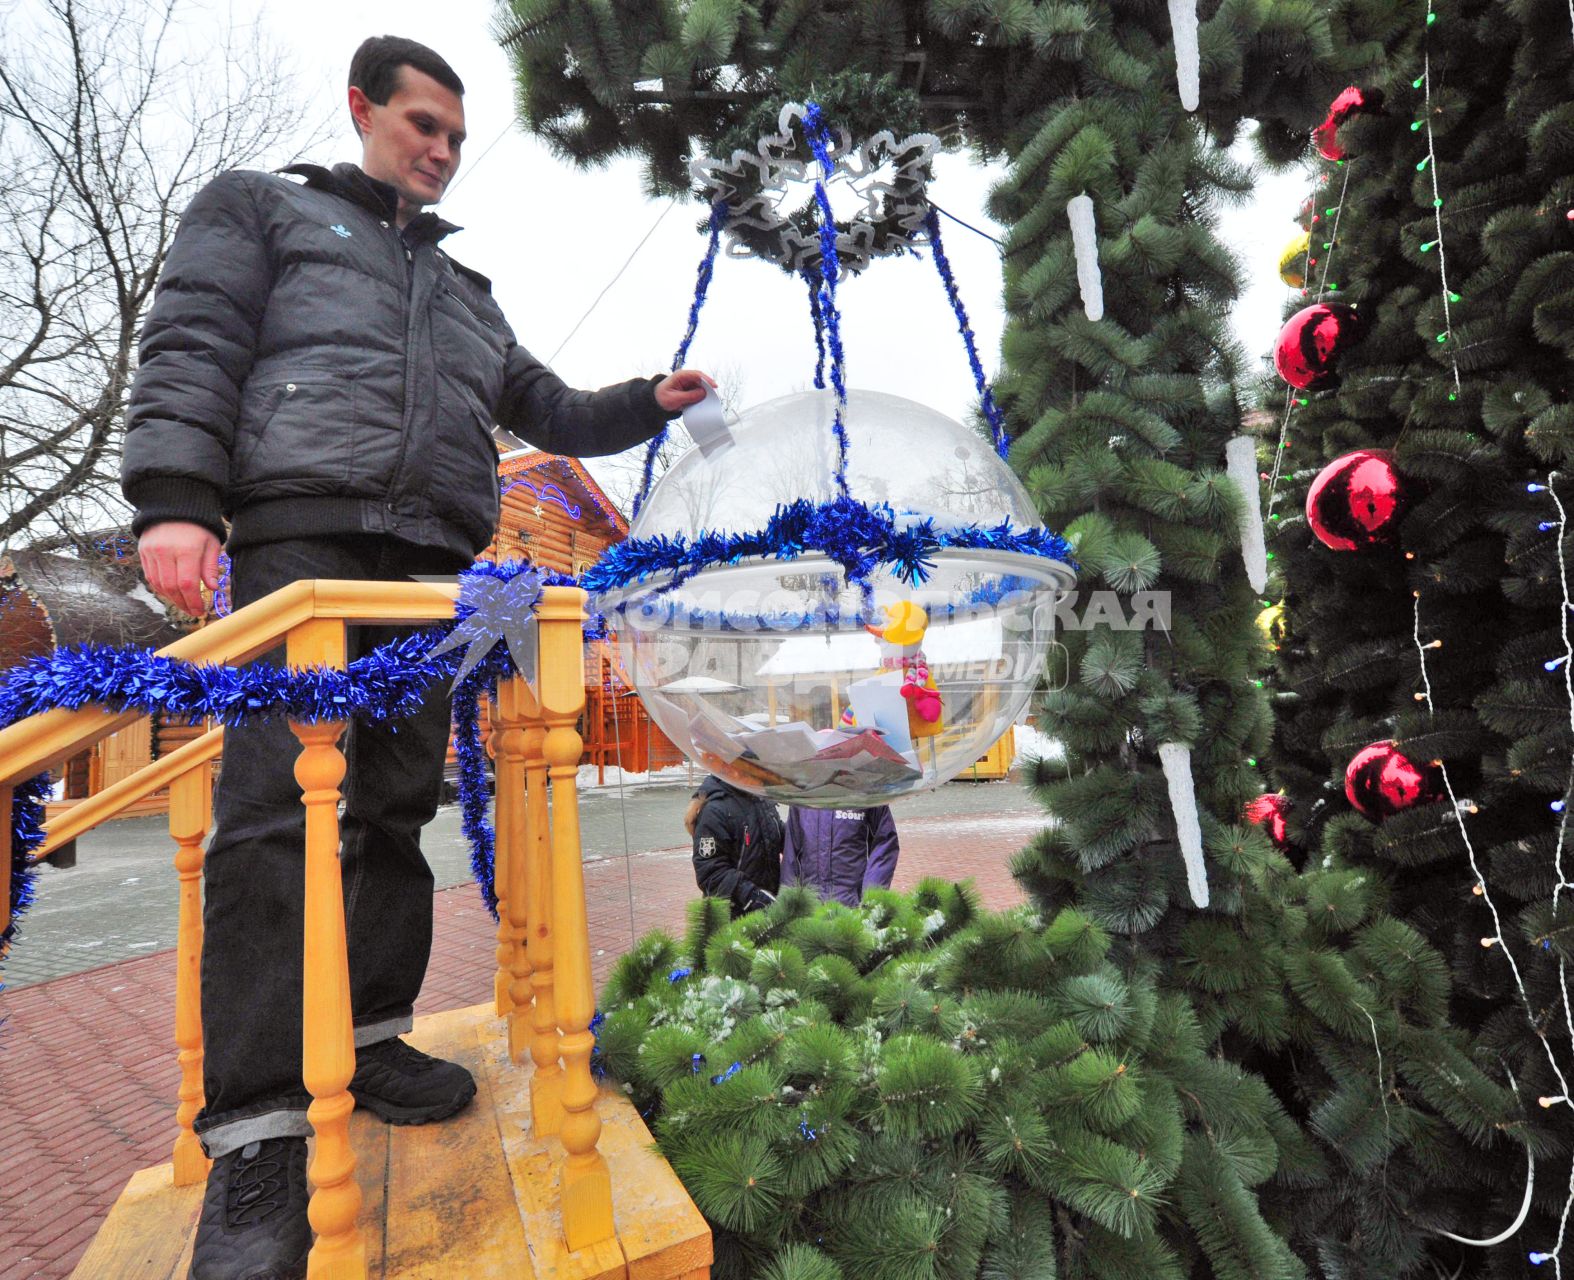 Московская усадьба Деда Мороза. На снимке: мужчина отправляет письмо Деду Морозу.